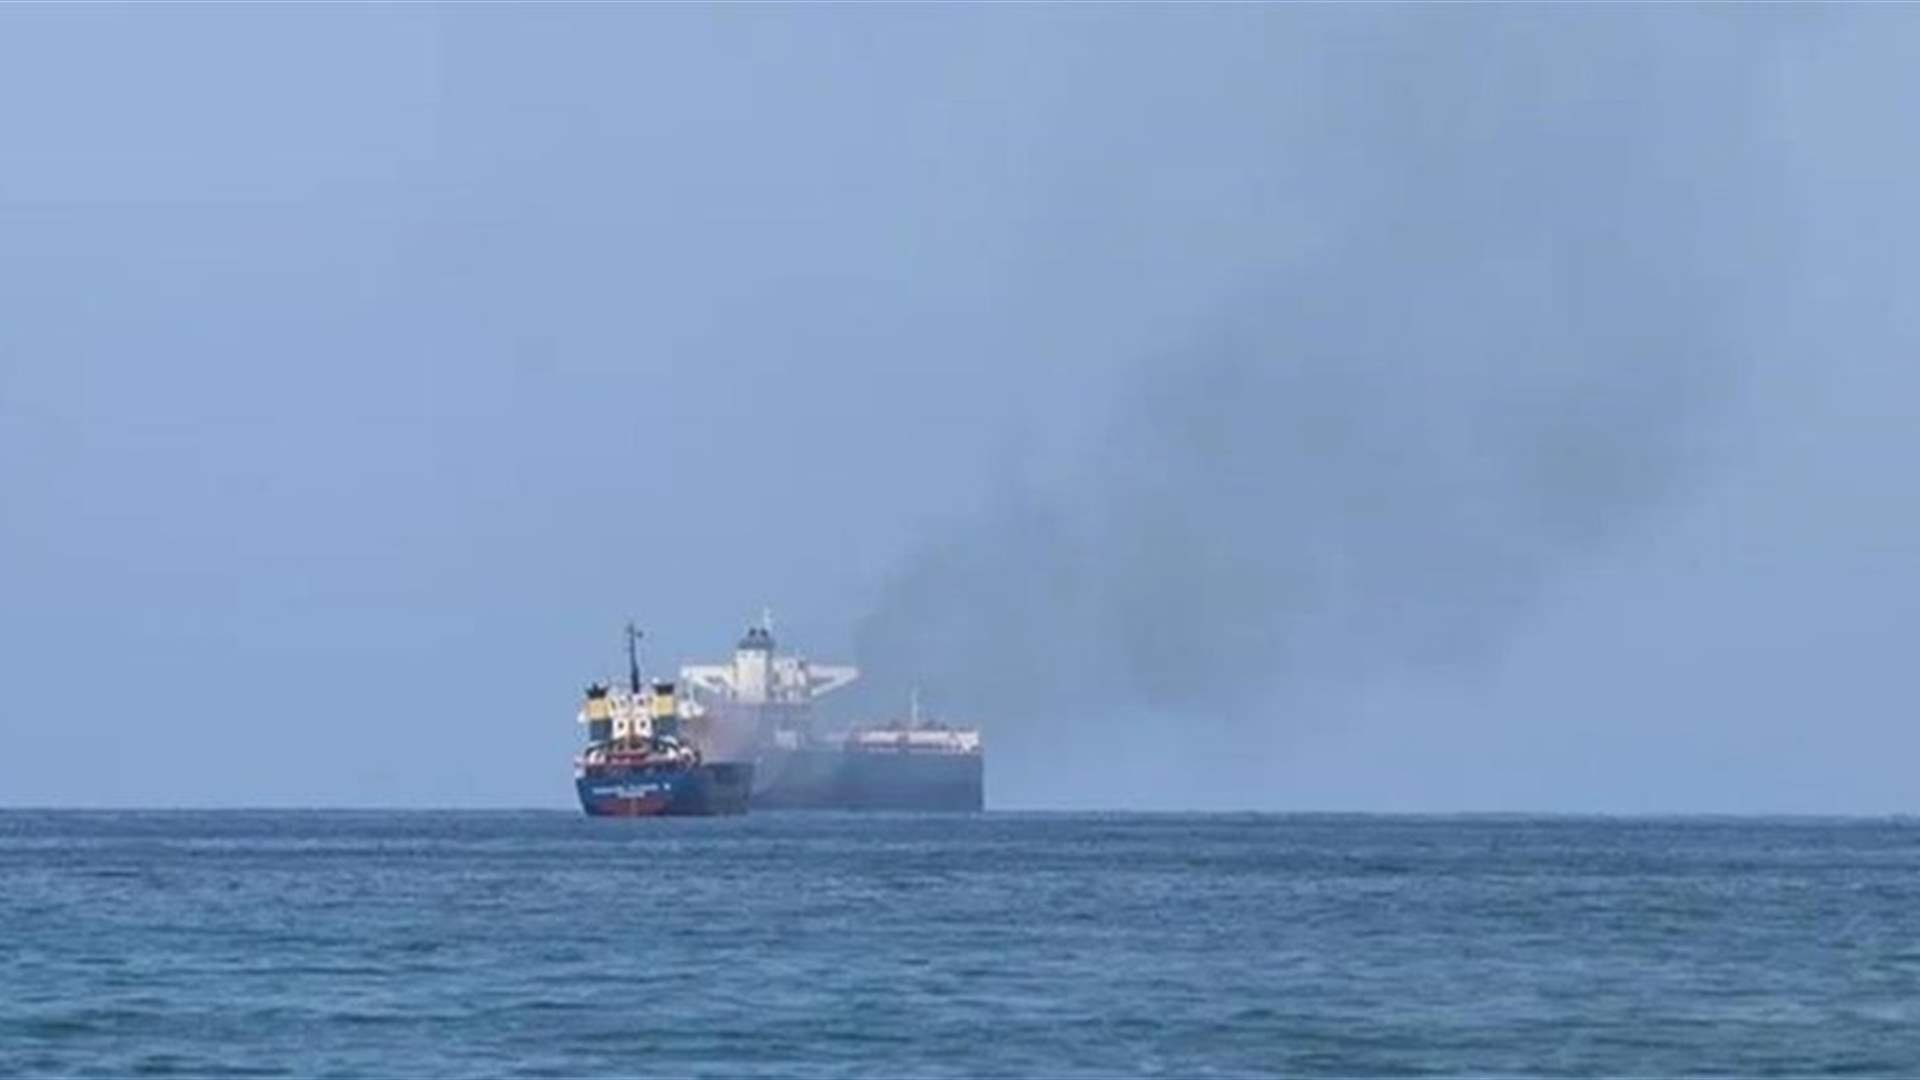 تضرر سفينة شحن جراء هجوم بمسيرة قبالة اليمن